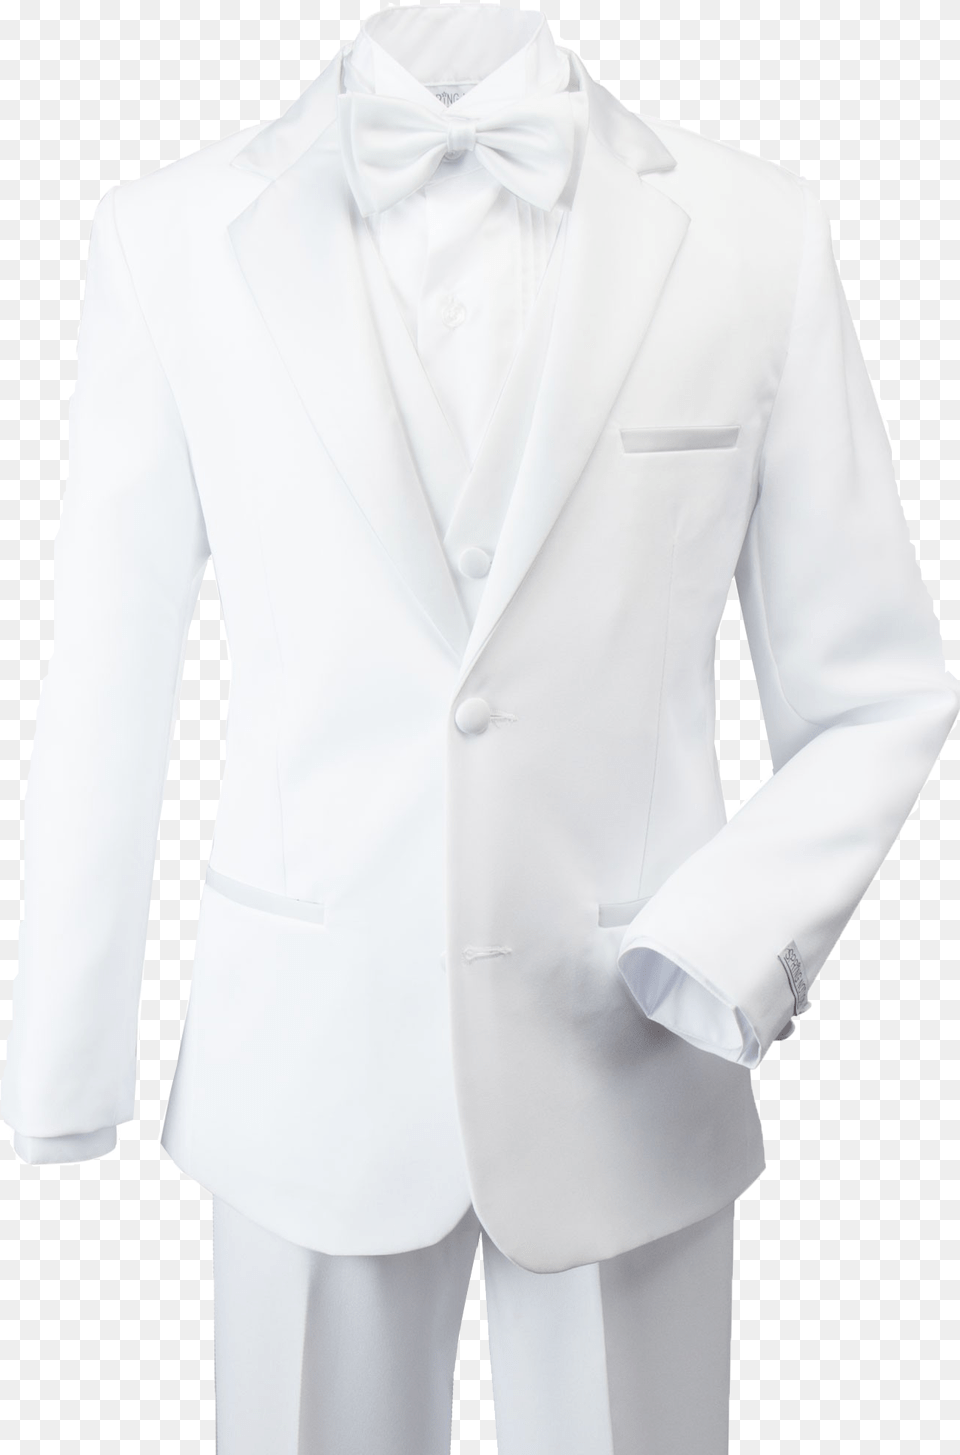 White Tuxedo Suit Free Pic Tuxedo, Clothing, Formal Wear, Shirt, Coat Png Image